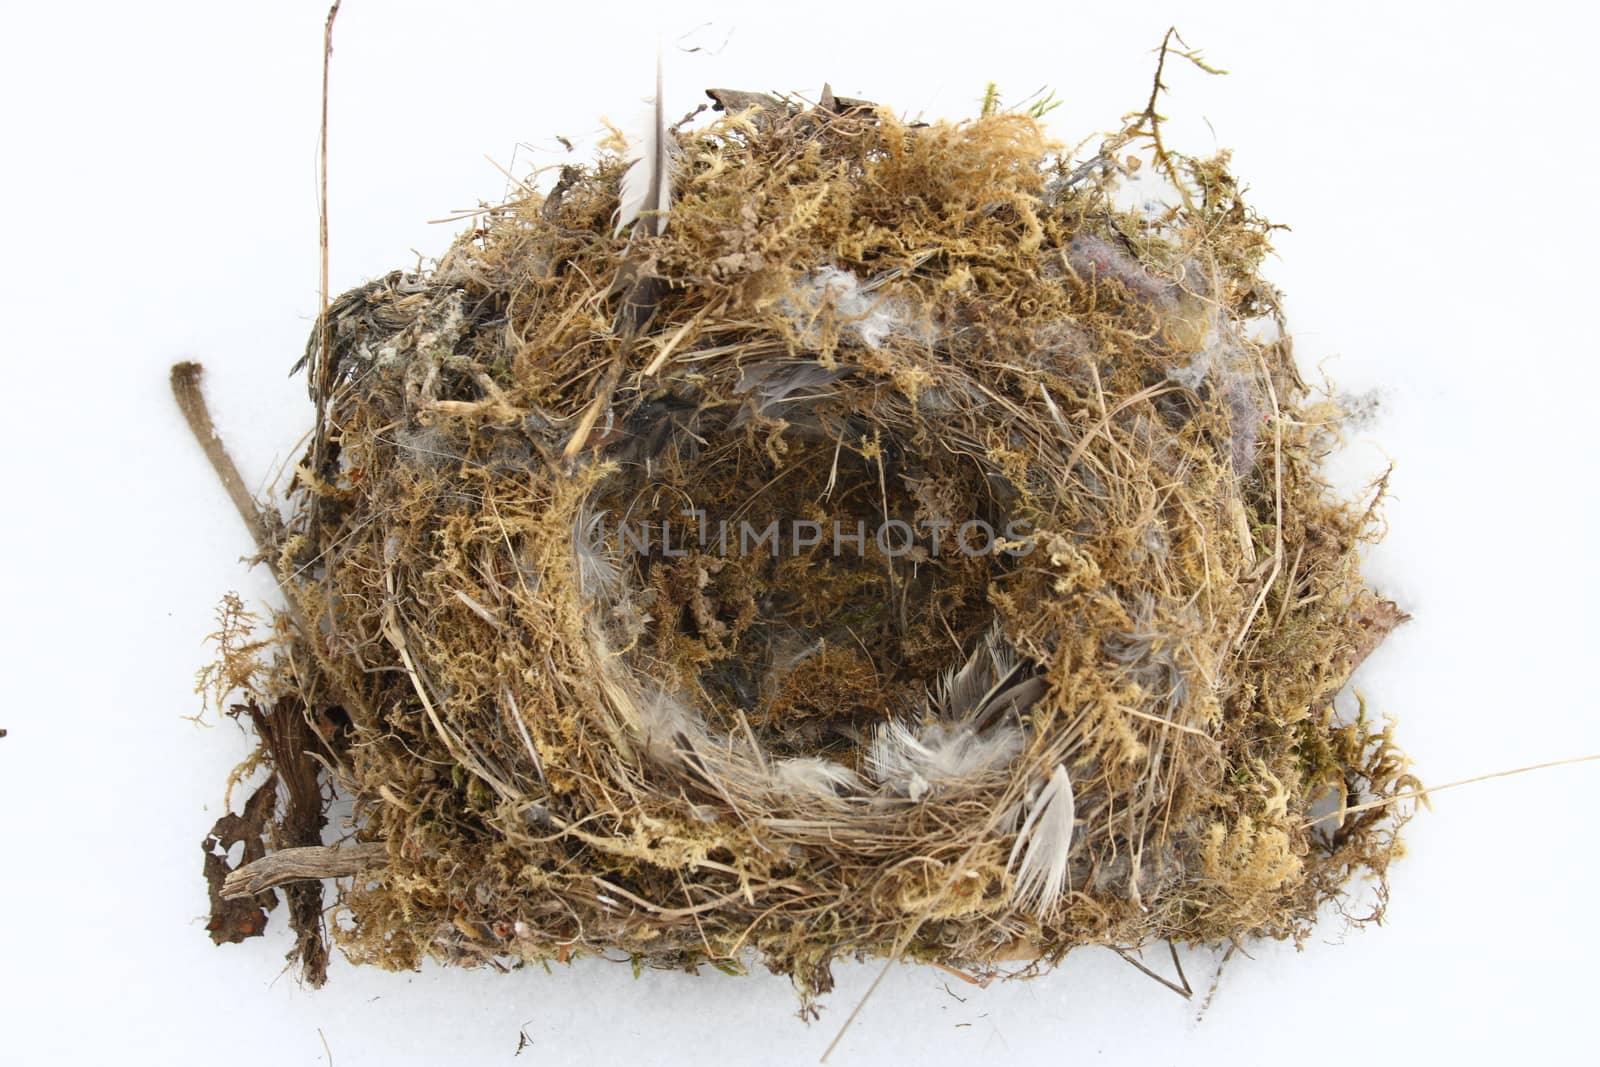 Bird's nest with feathers, moss and small twigs      Vogelnest mit Federn,Moos und kleinen �sten